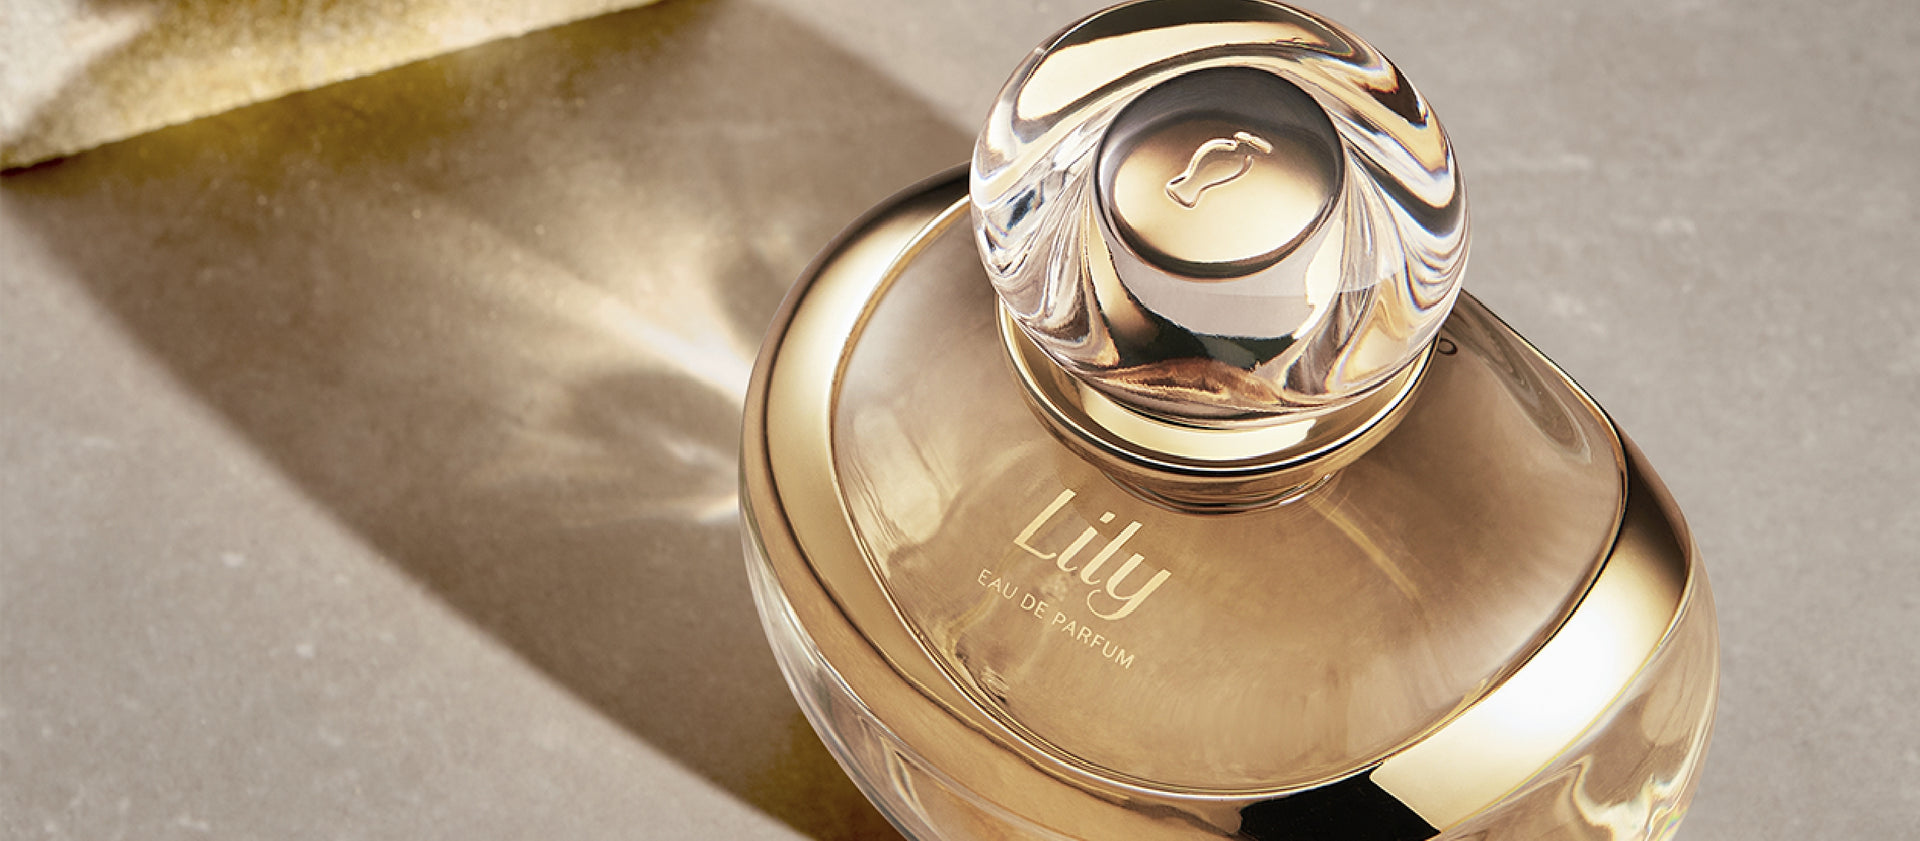 Lily Eau de Parfum 2021 O Boticário perfume - a fragrance for women 2021